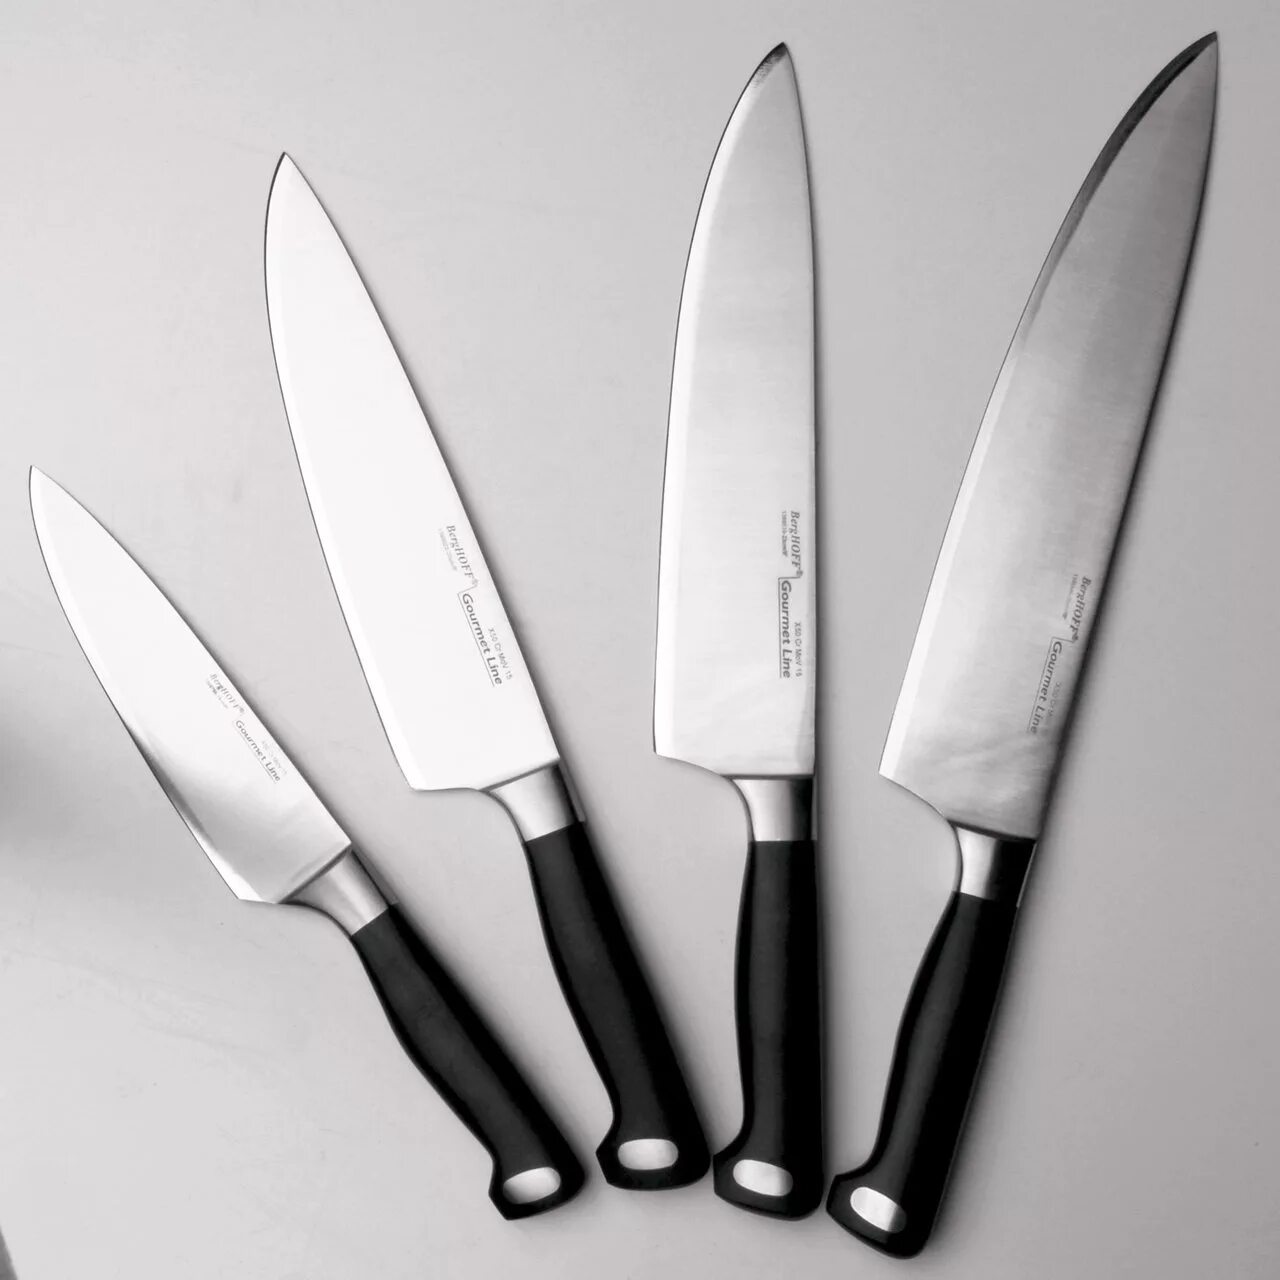 Кухня кухонные ножи. Нож поварской BERGHOFF Gourmet. Tojiro Julia Vysotskaya professional Pro Дамаск. Нож поварской "Gourmet", 20 см. BERGHOFF нож разделочный Gourmet 20 см.